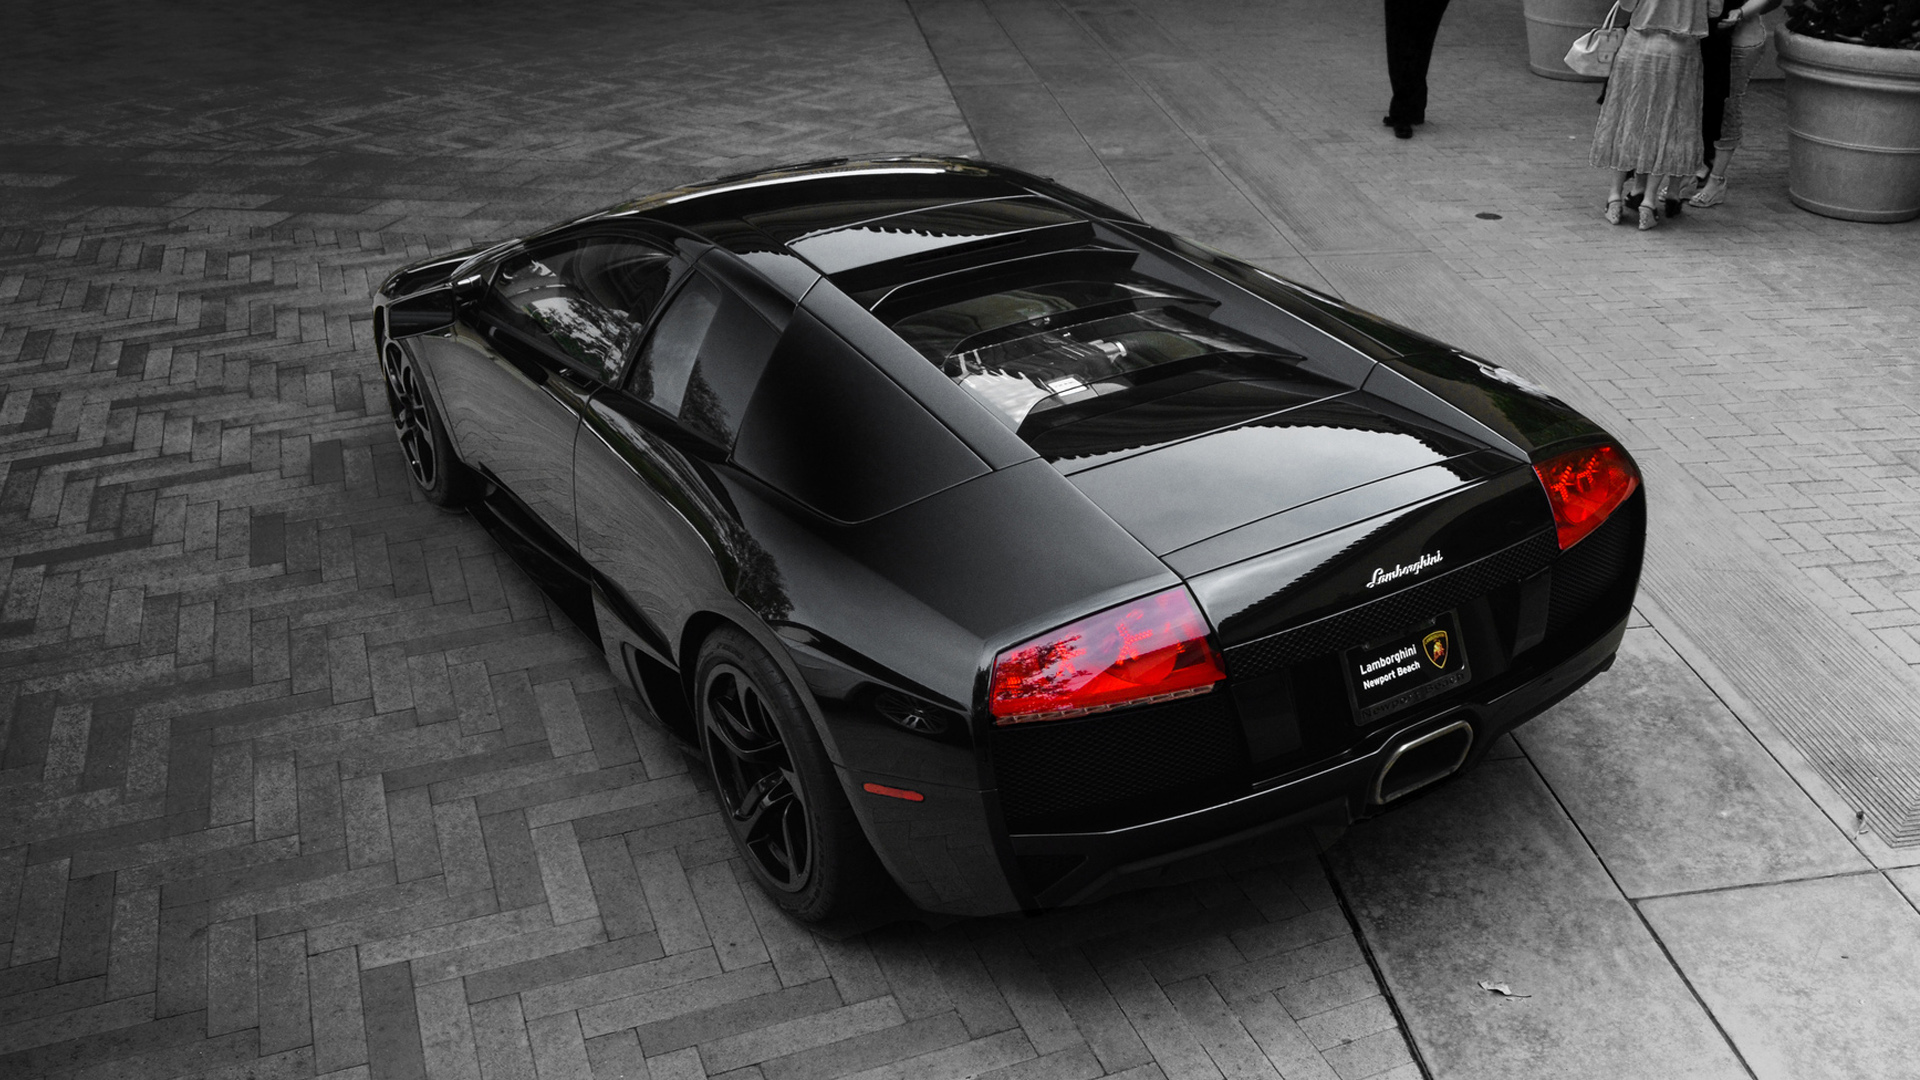 Black Lamborghini Murcielago LP640 Wallpaper | HD Car ...